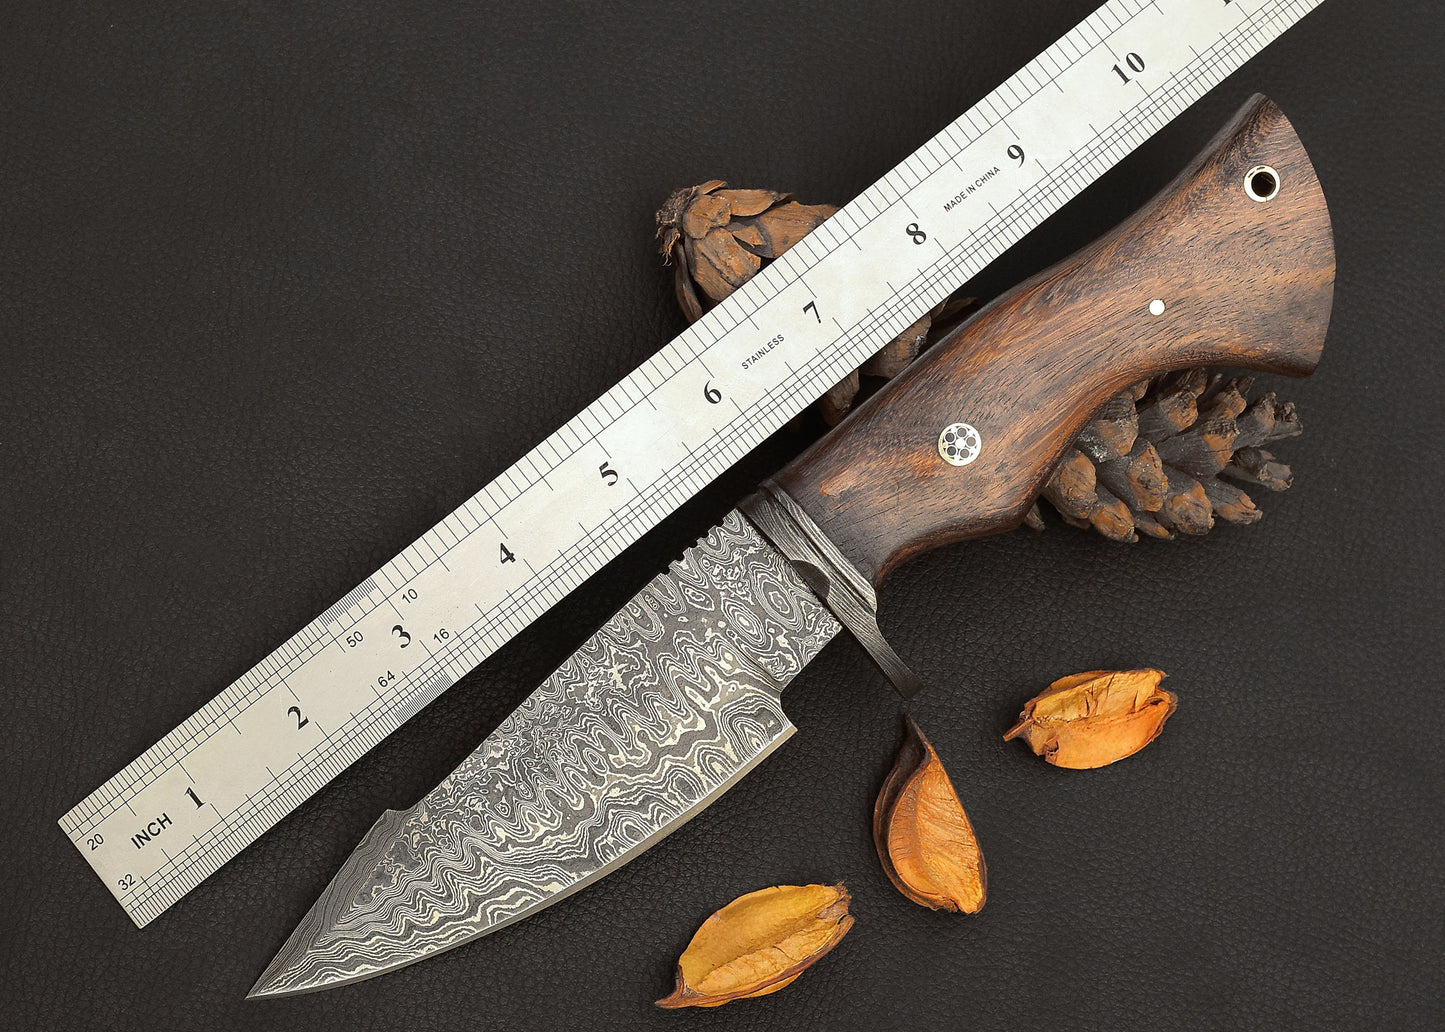 Custom Damascus Steel Hunting Knife Pakka Wood Handle